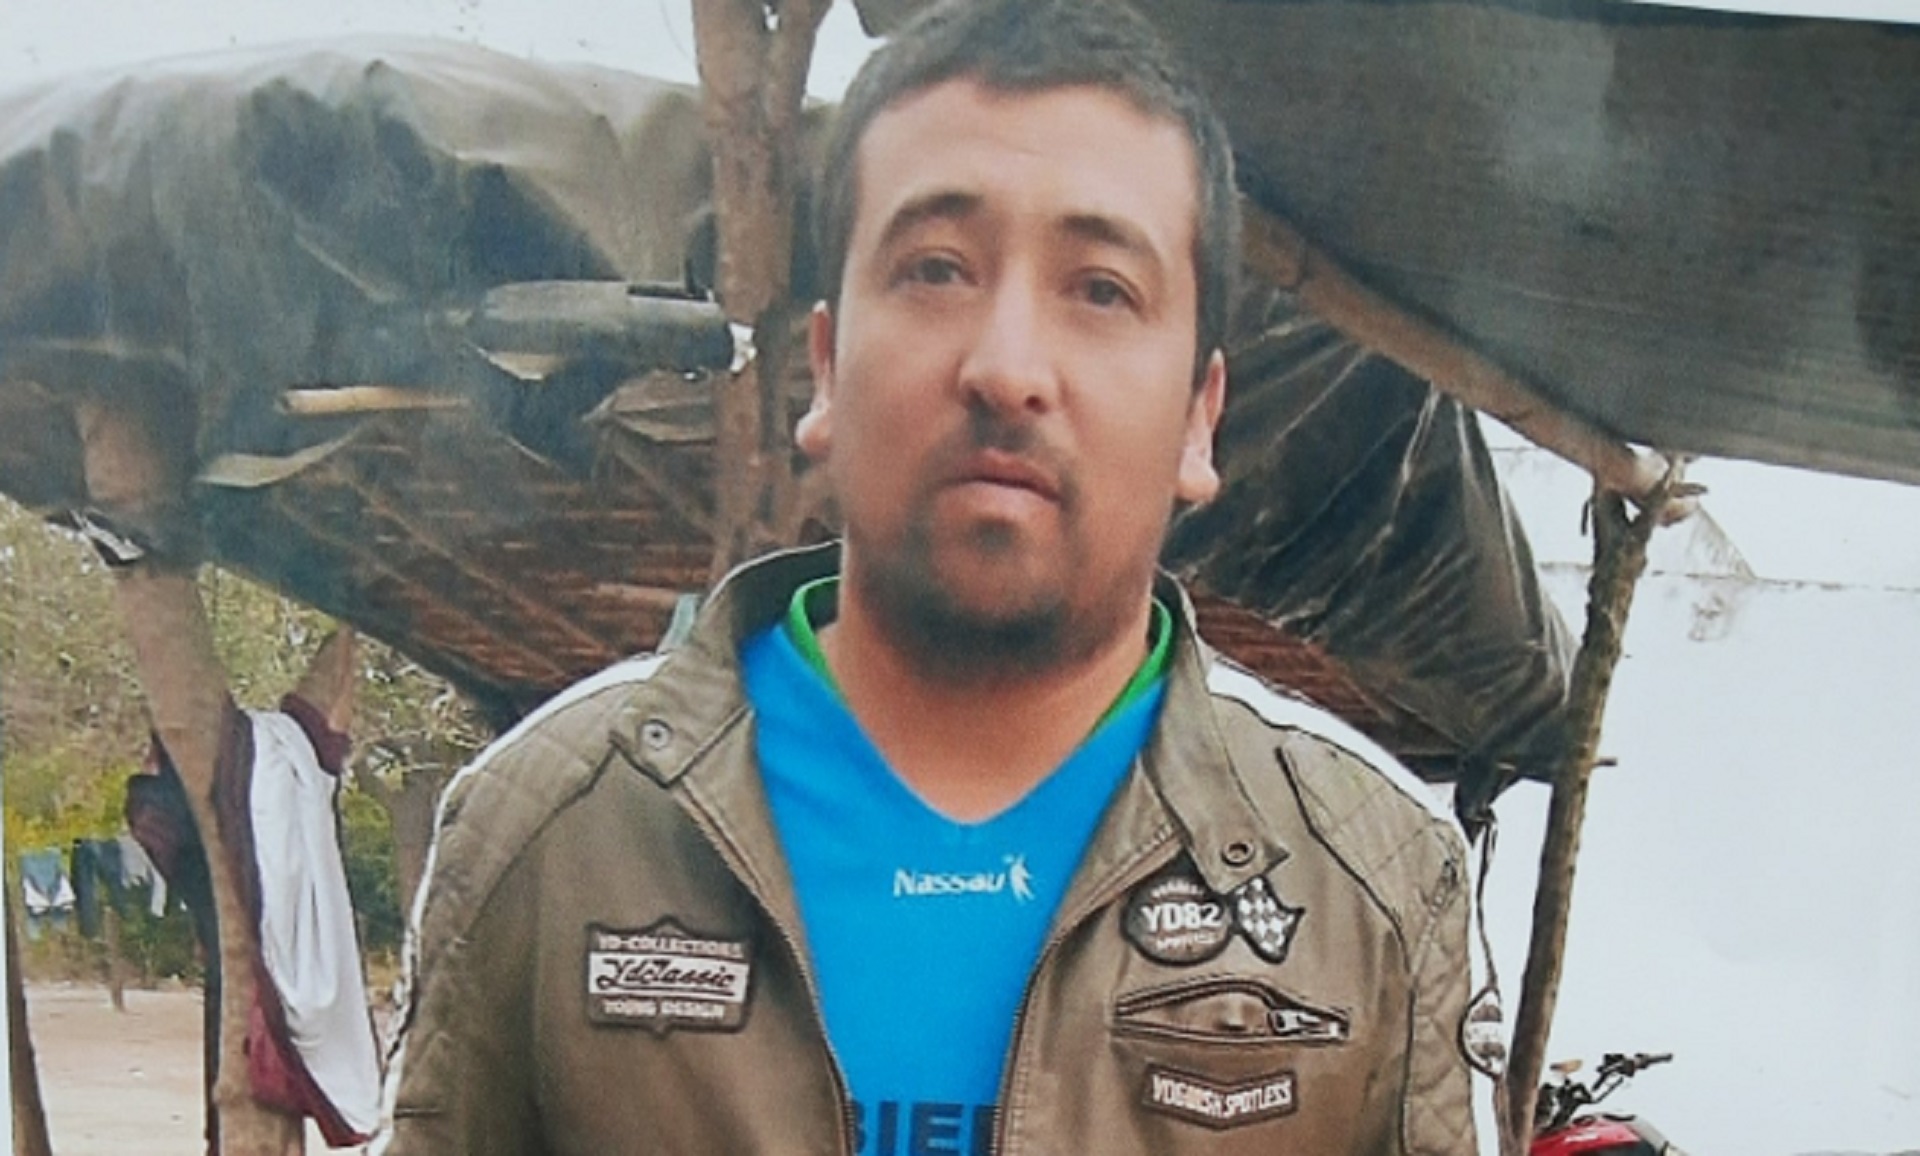 Luis Espinoza murió el 15 de mayo y su cuerpo fue encontrado el 22 del mismo mes, a más de 100 km de distancia del lugar de su desaparición